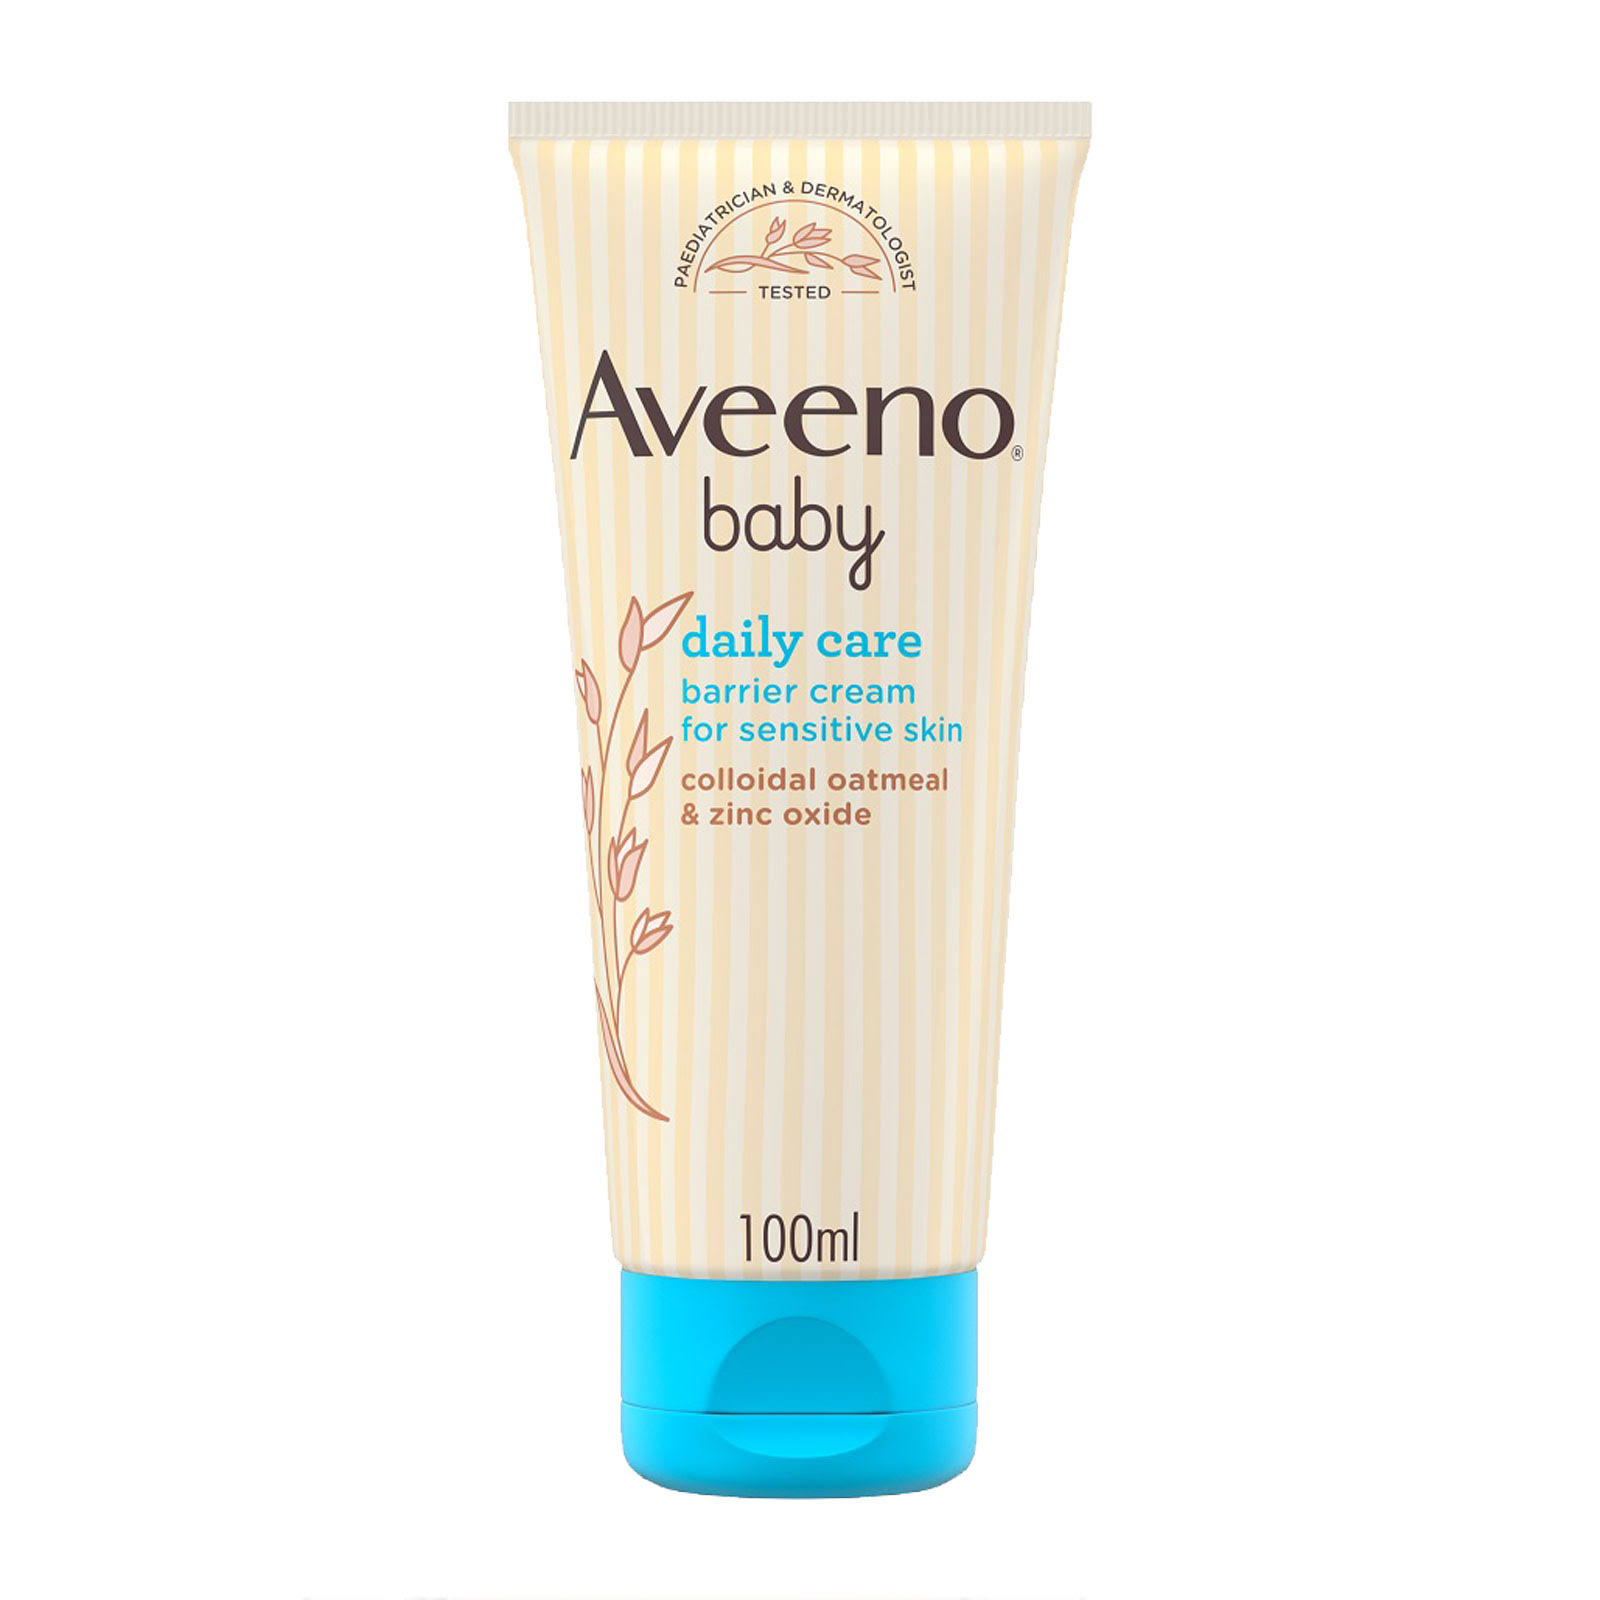 Aveeno Baby Daily Care Baby Barrier Cream - 100ml